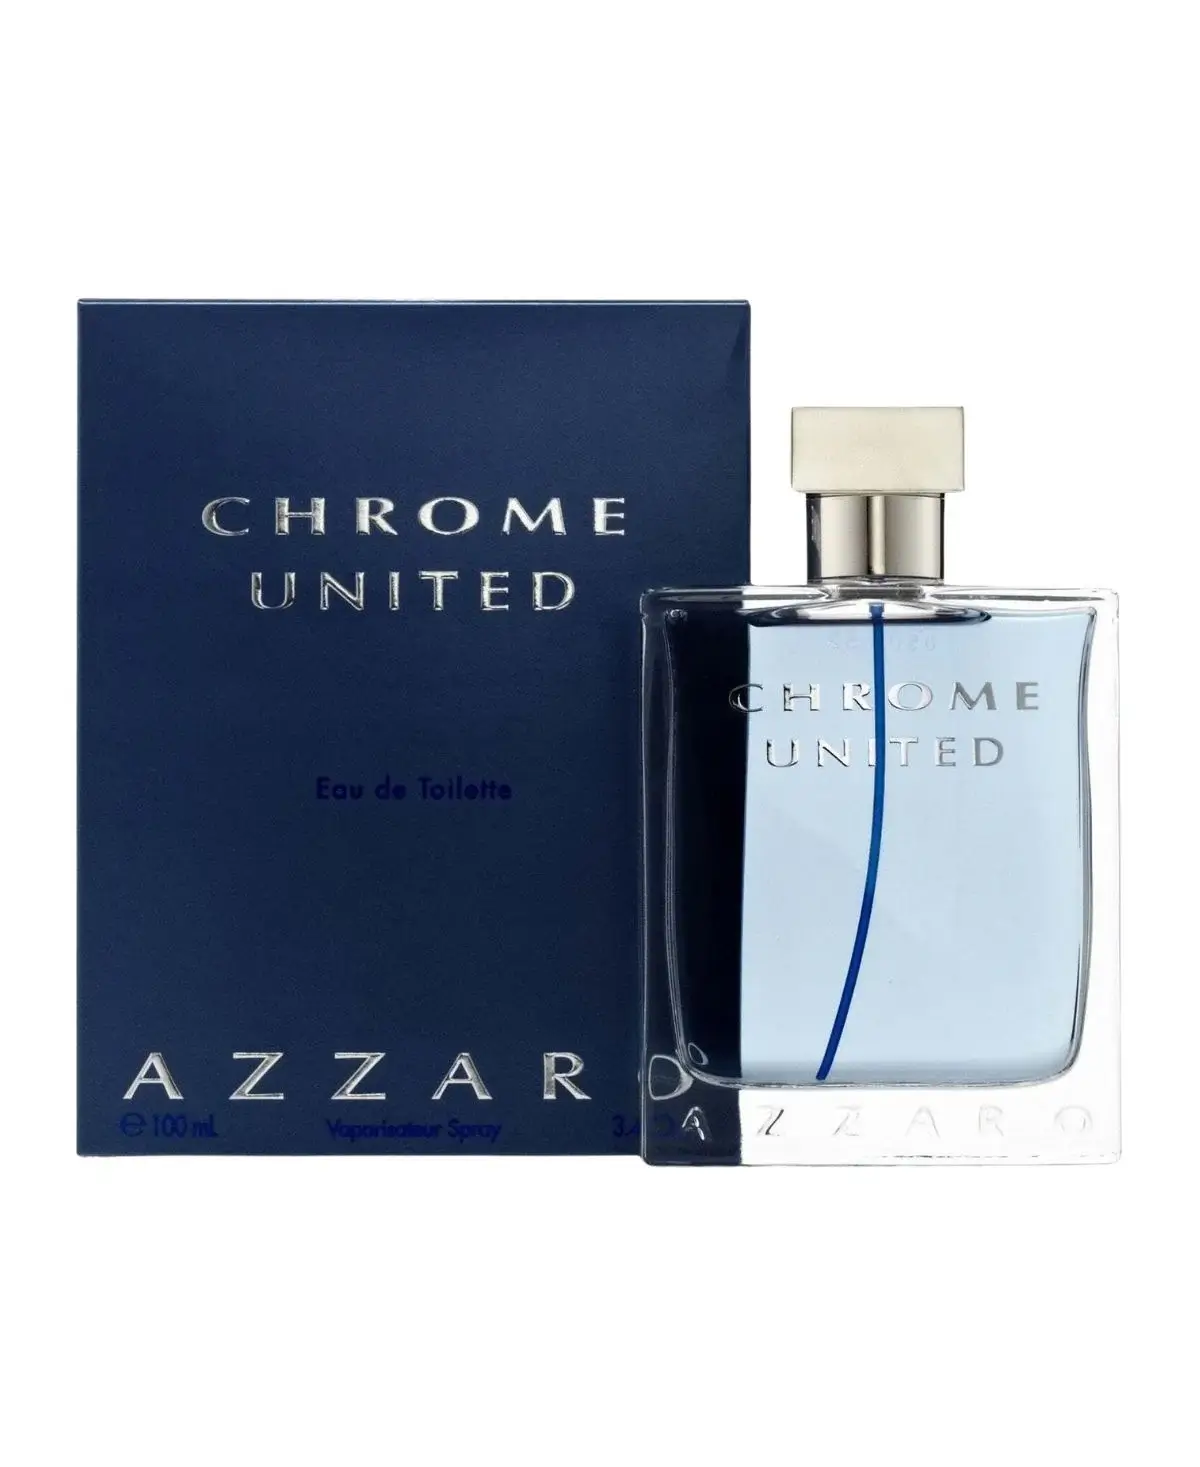 Azzaro Chrome United for Men Eau de Toilette (EDT) Spray 3.4 oz (100 ml) 3351500020317